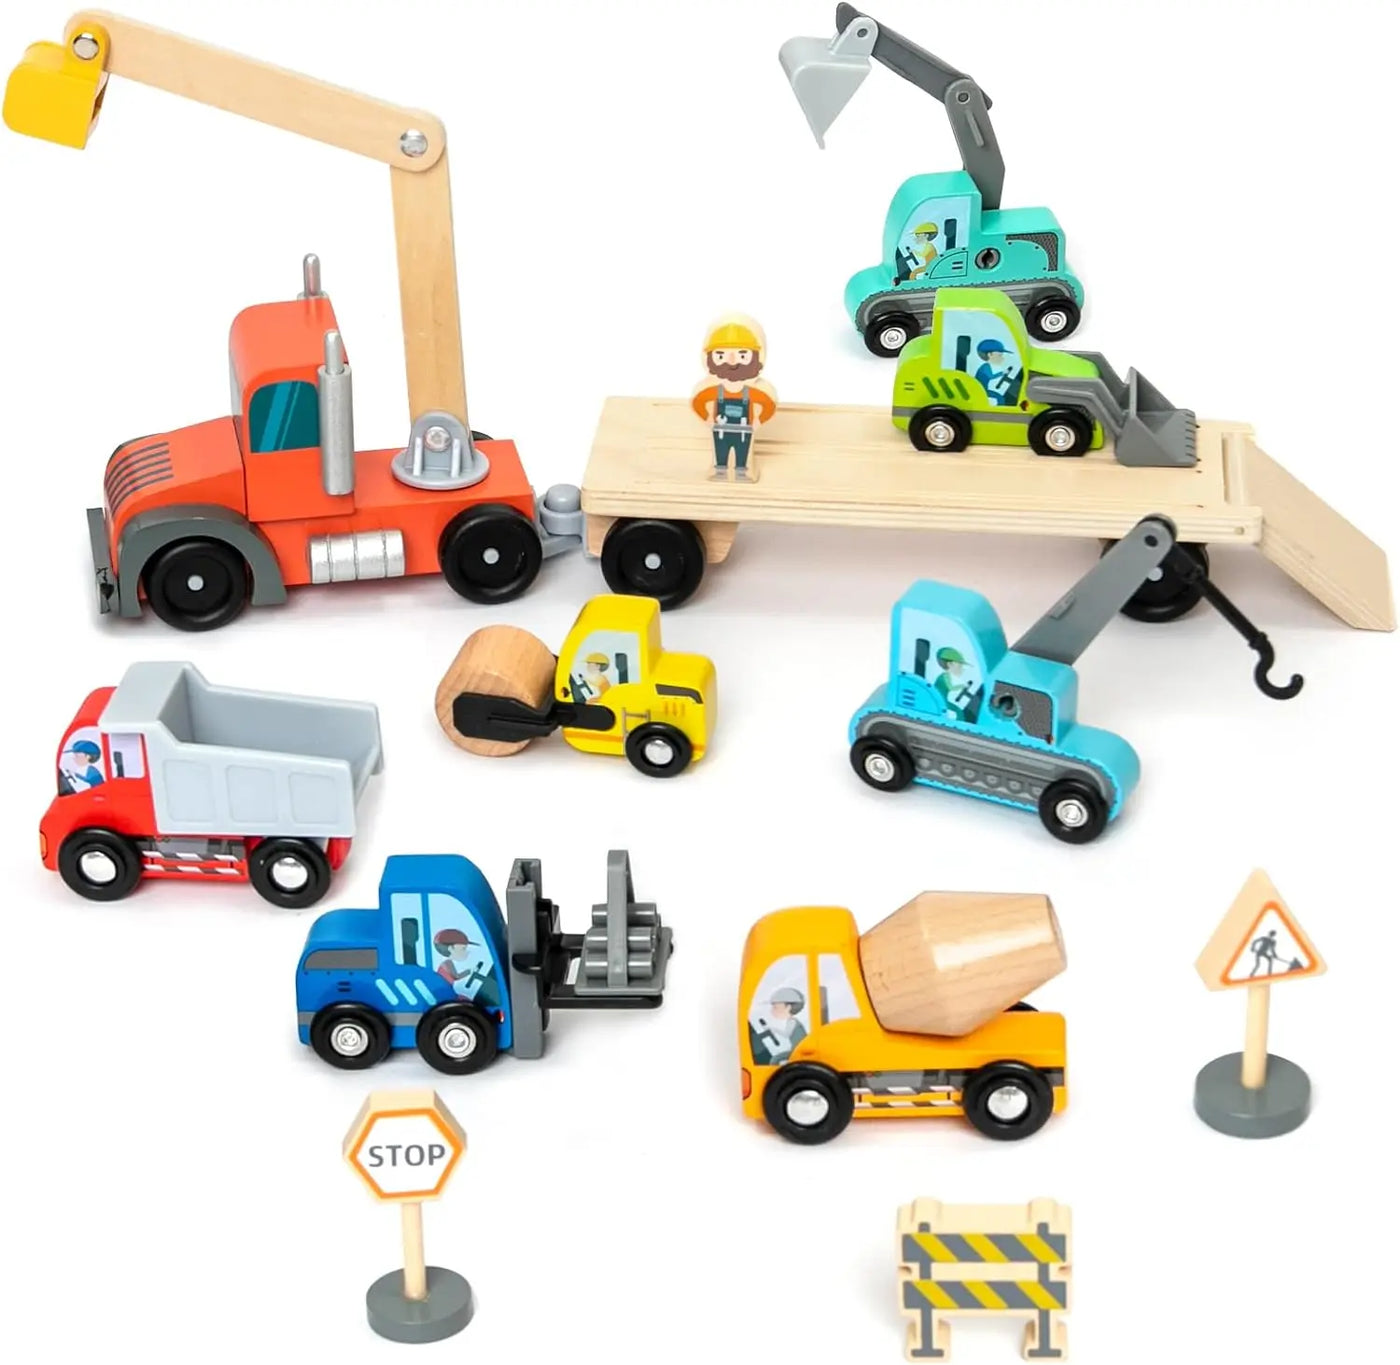 Construction Cars With Trailer Eduspark Toys